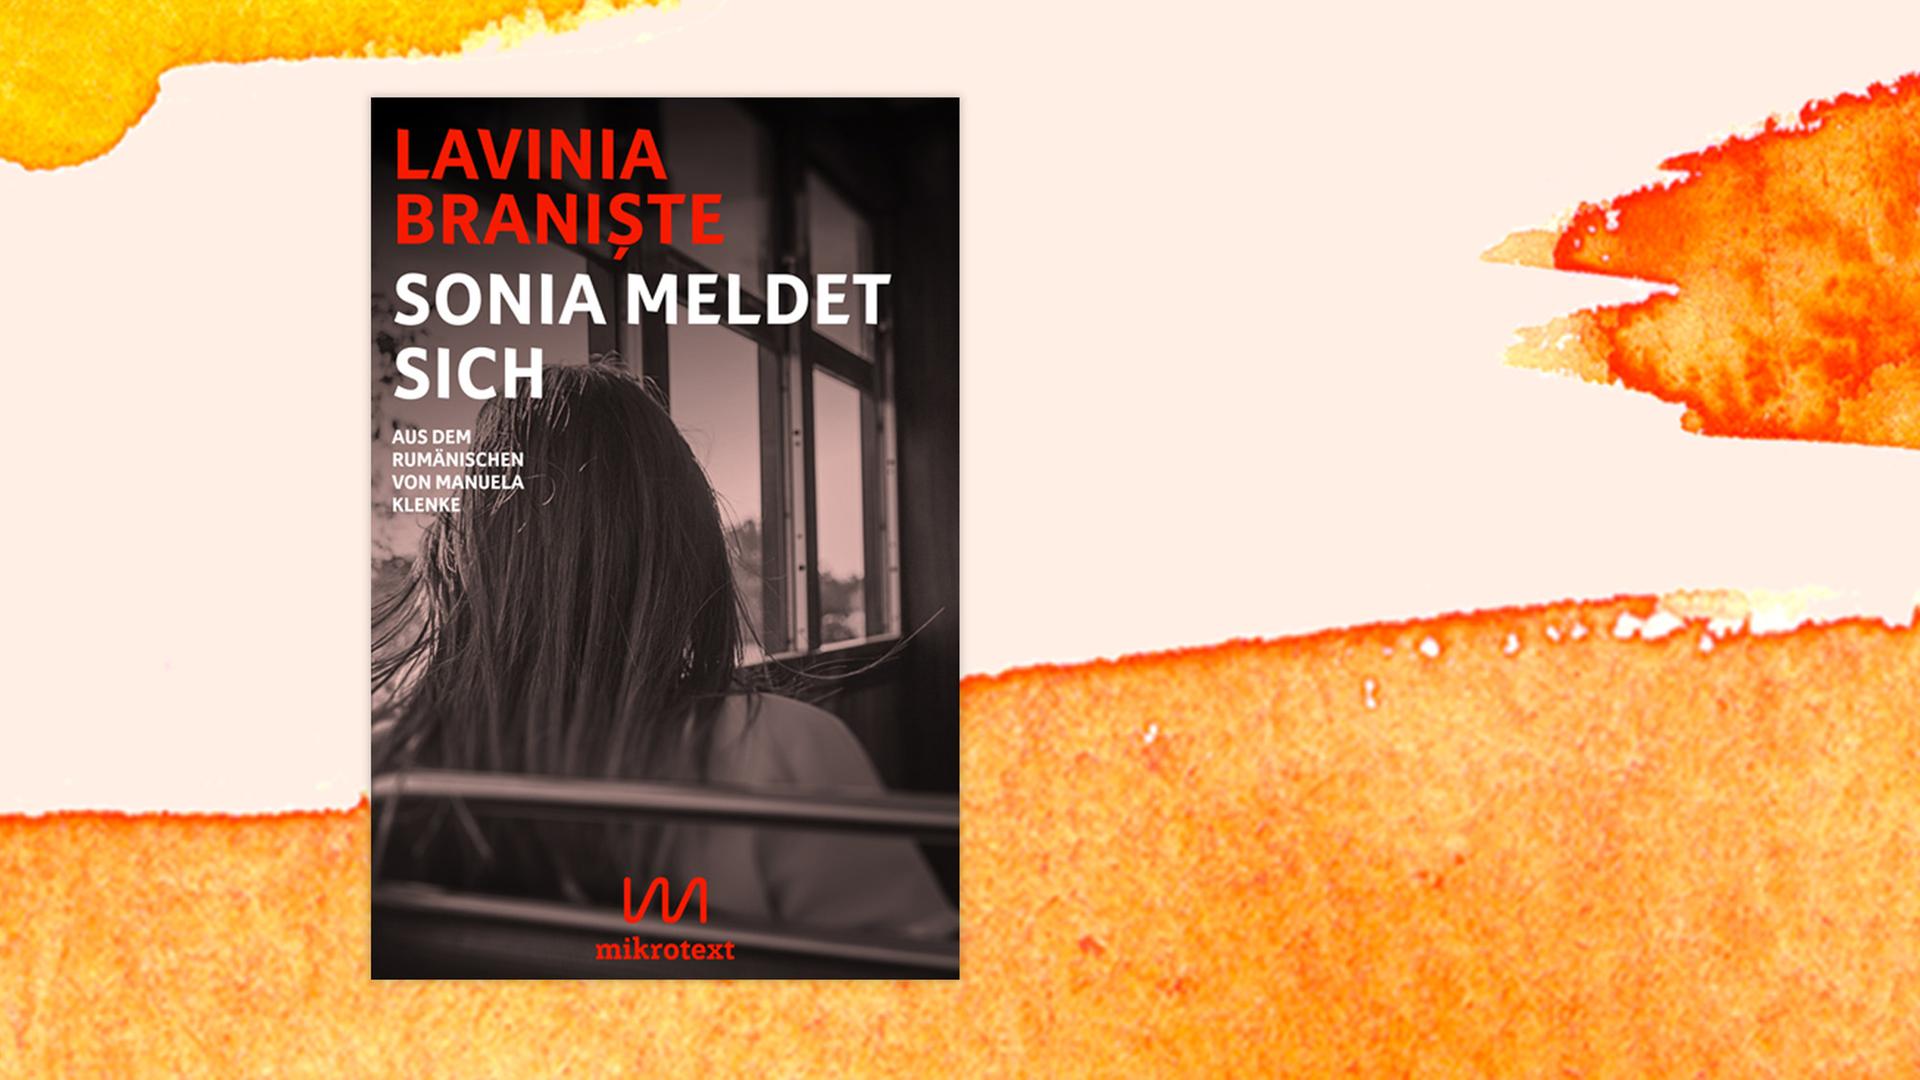 Buchcover zu Lavinia Braniste: "Sonia meldet sich"